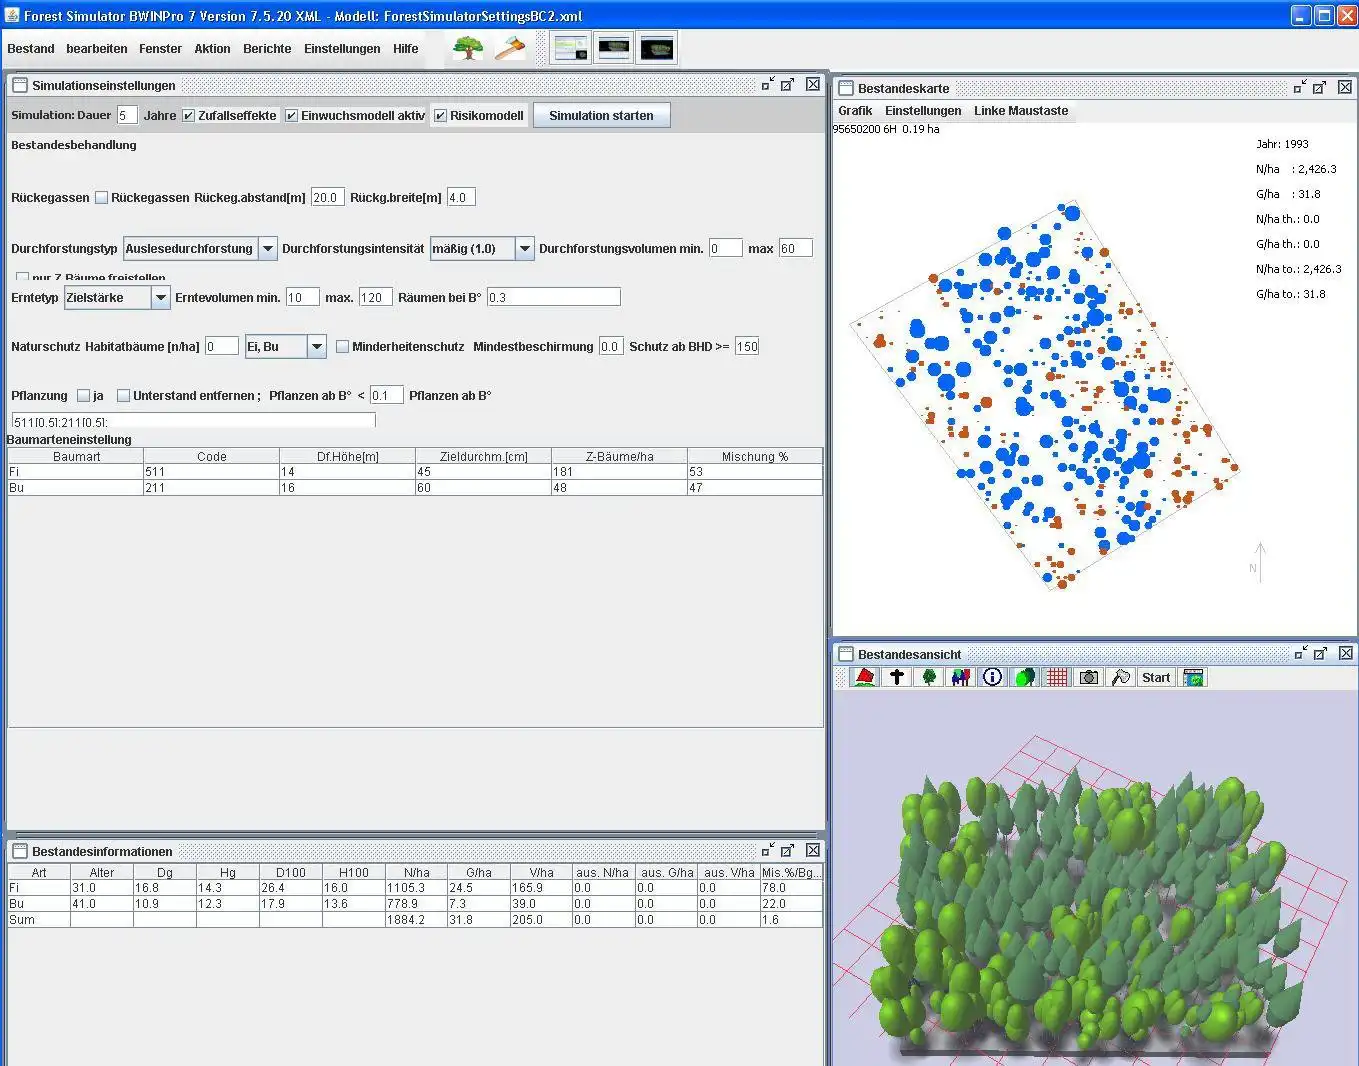 Laden Sie das Web-Tool oder die Web-App TreeGrOSS Forest Growth Simulation herunter, um es online unter Linux auszuführen